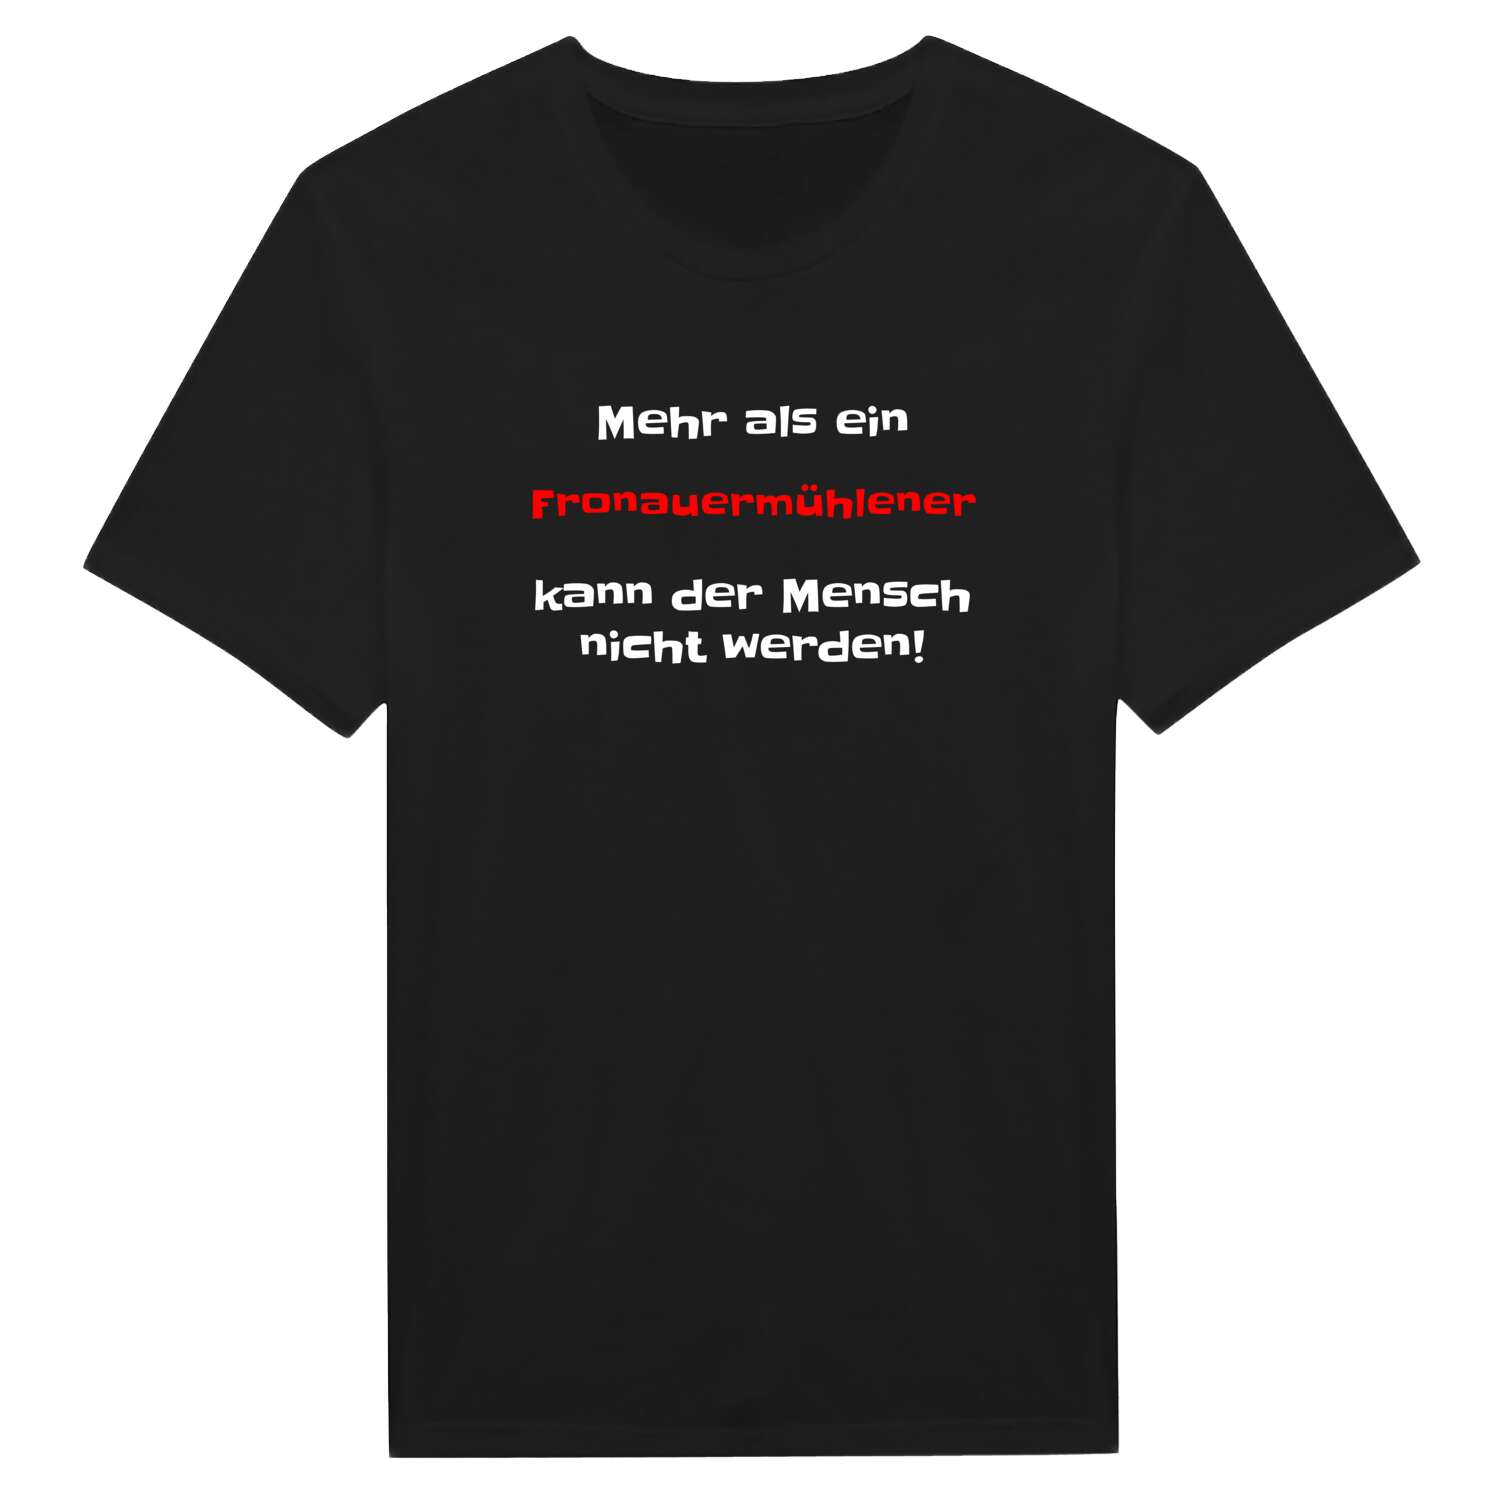 Fronauermühle T-Shirt »Mehr als ein«